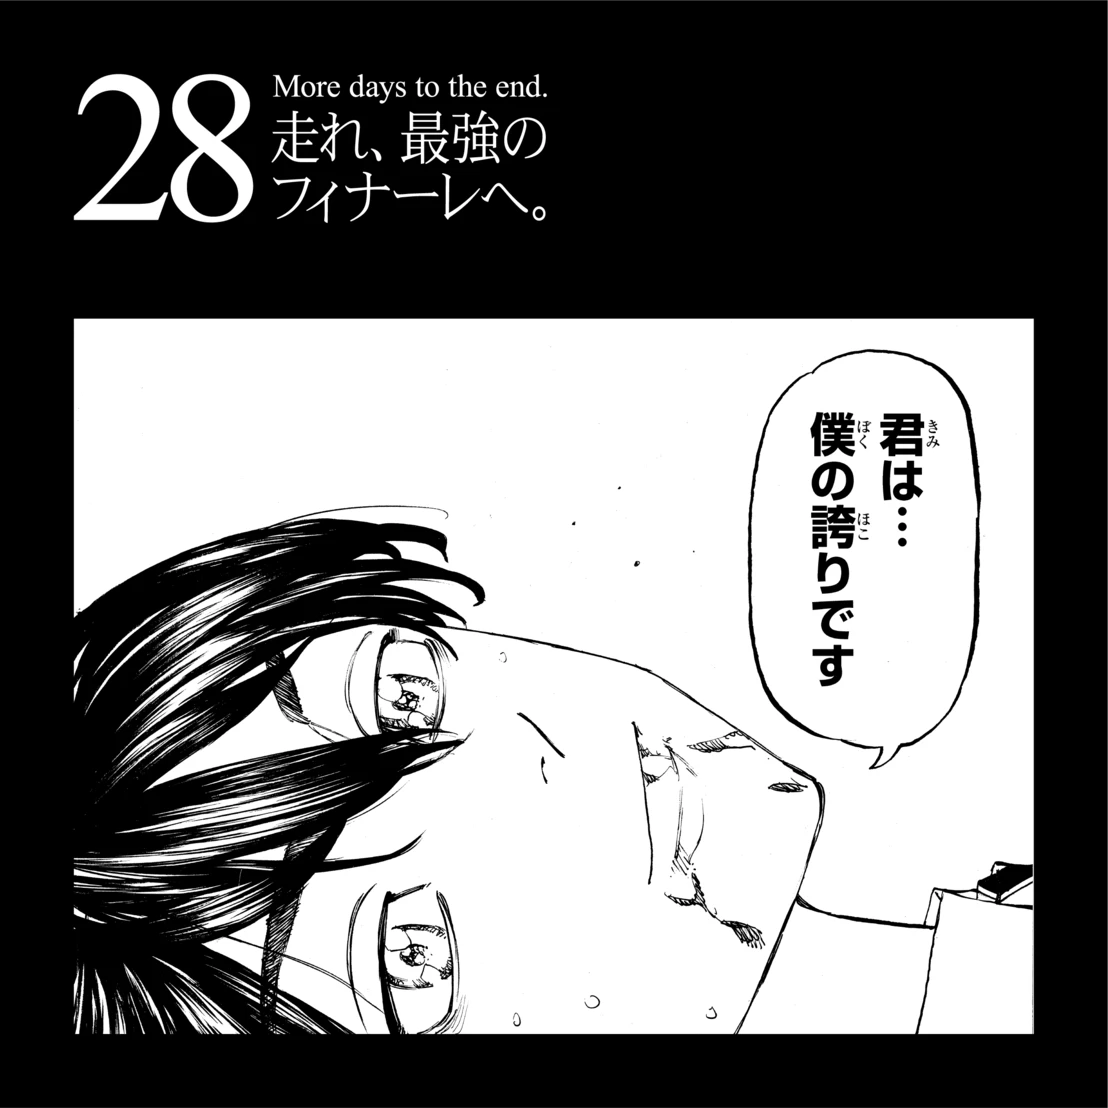 『東京卍リベンジャーズ』完結まで5話 『マガジン』11月16日発売号で最終回